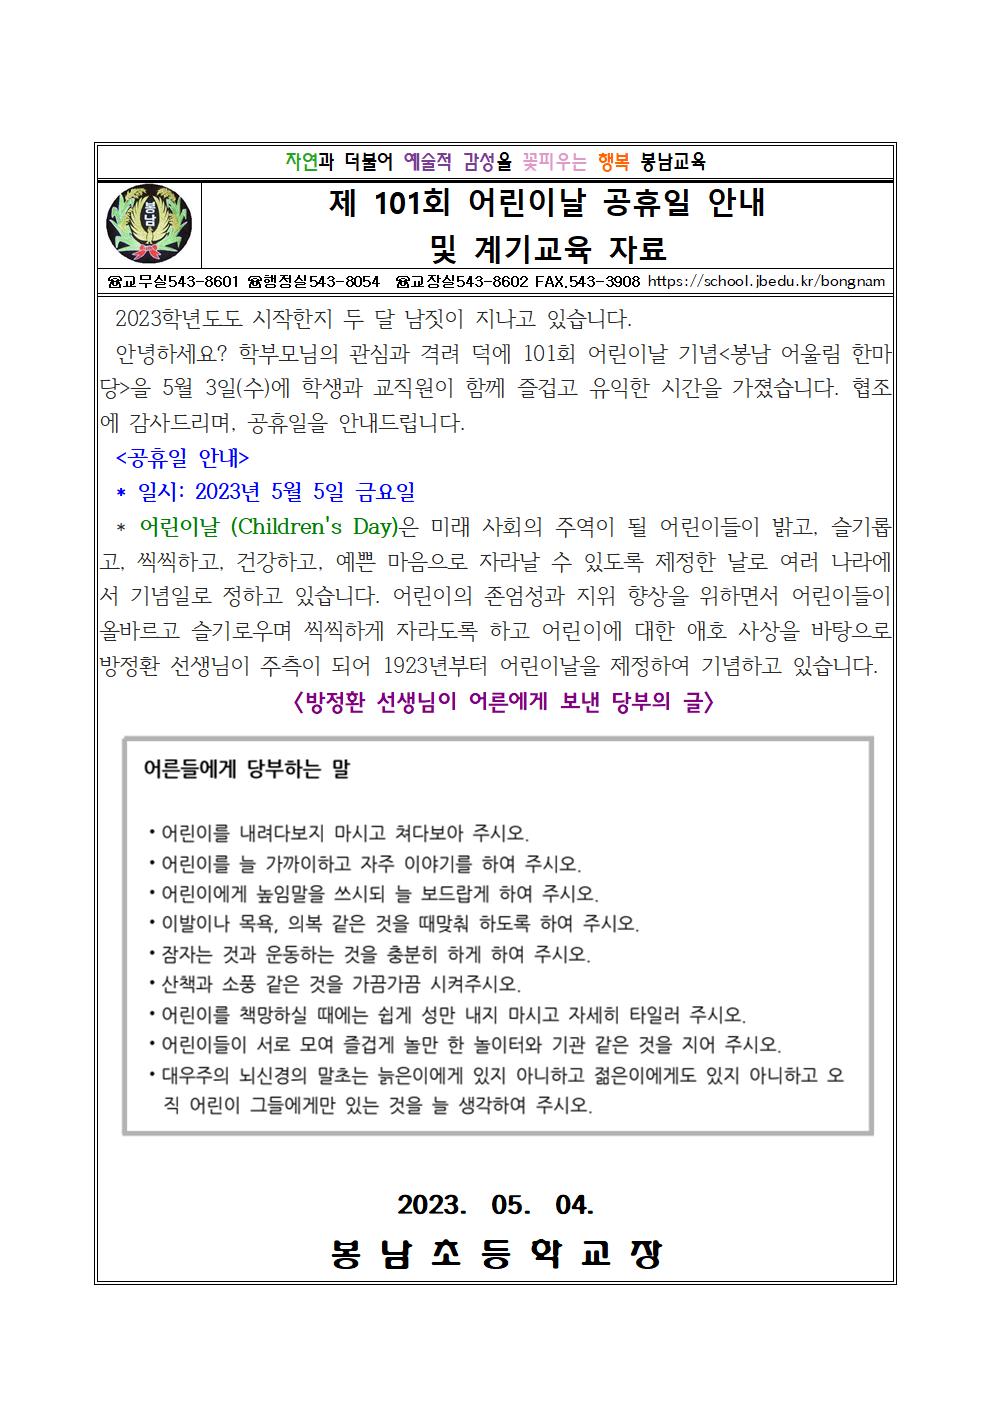 봉남초 가정통신문(어린이날 공휴일 안내 및 계기교육 자료)001